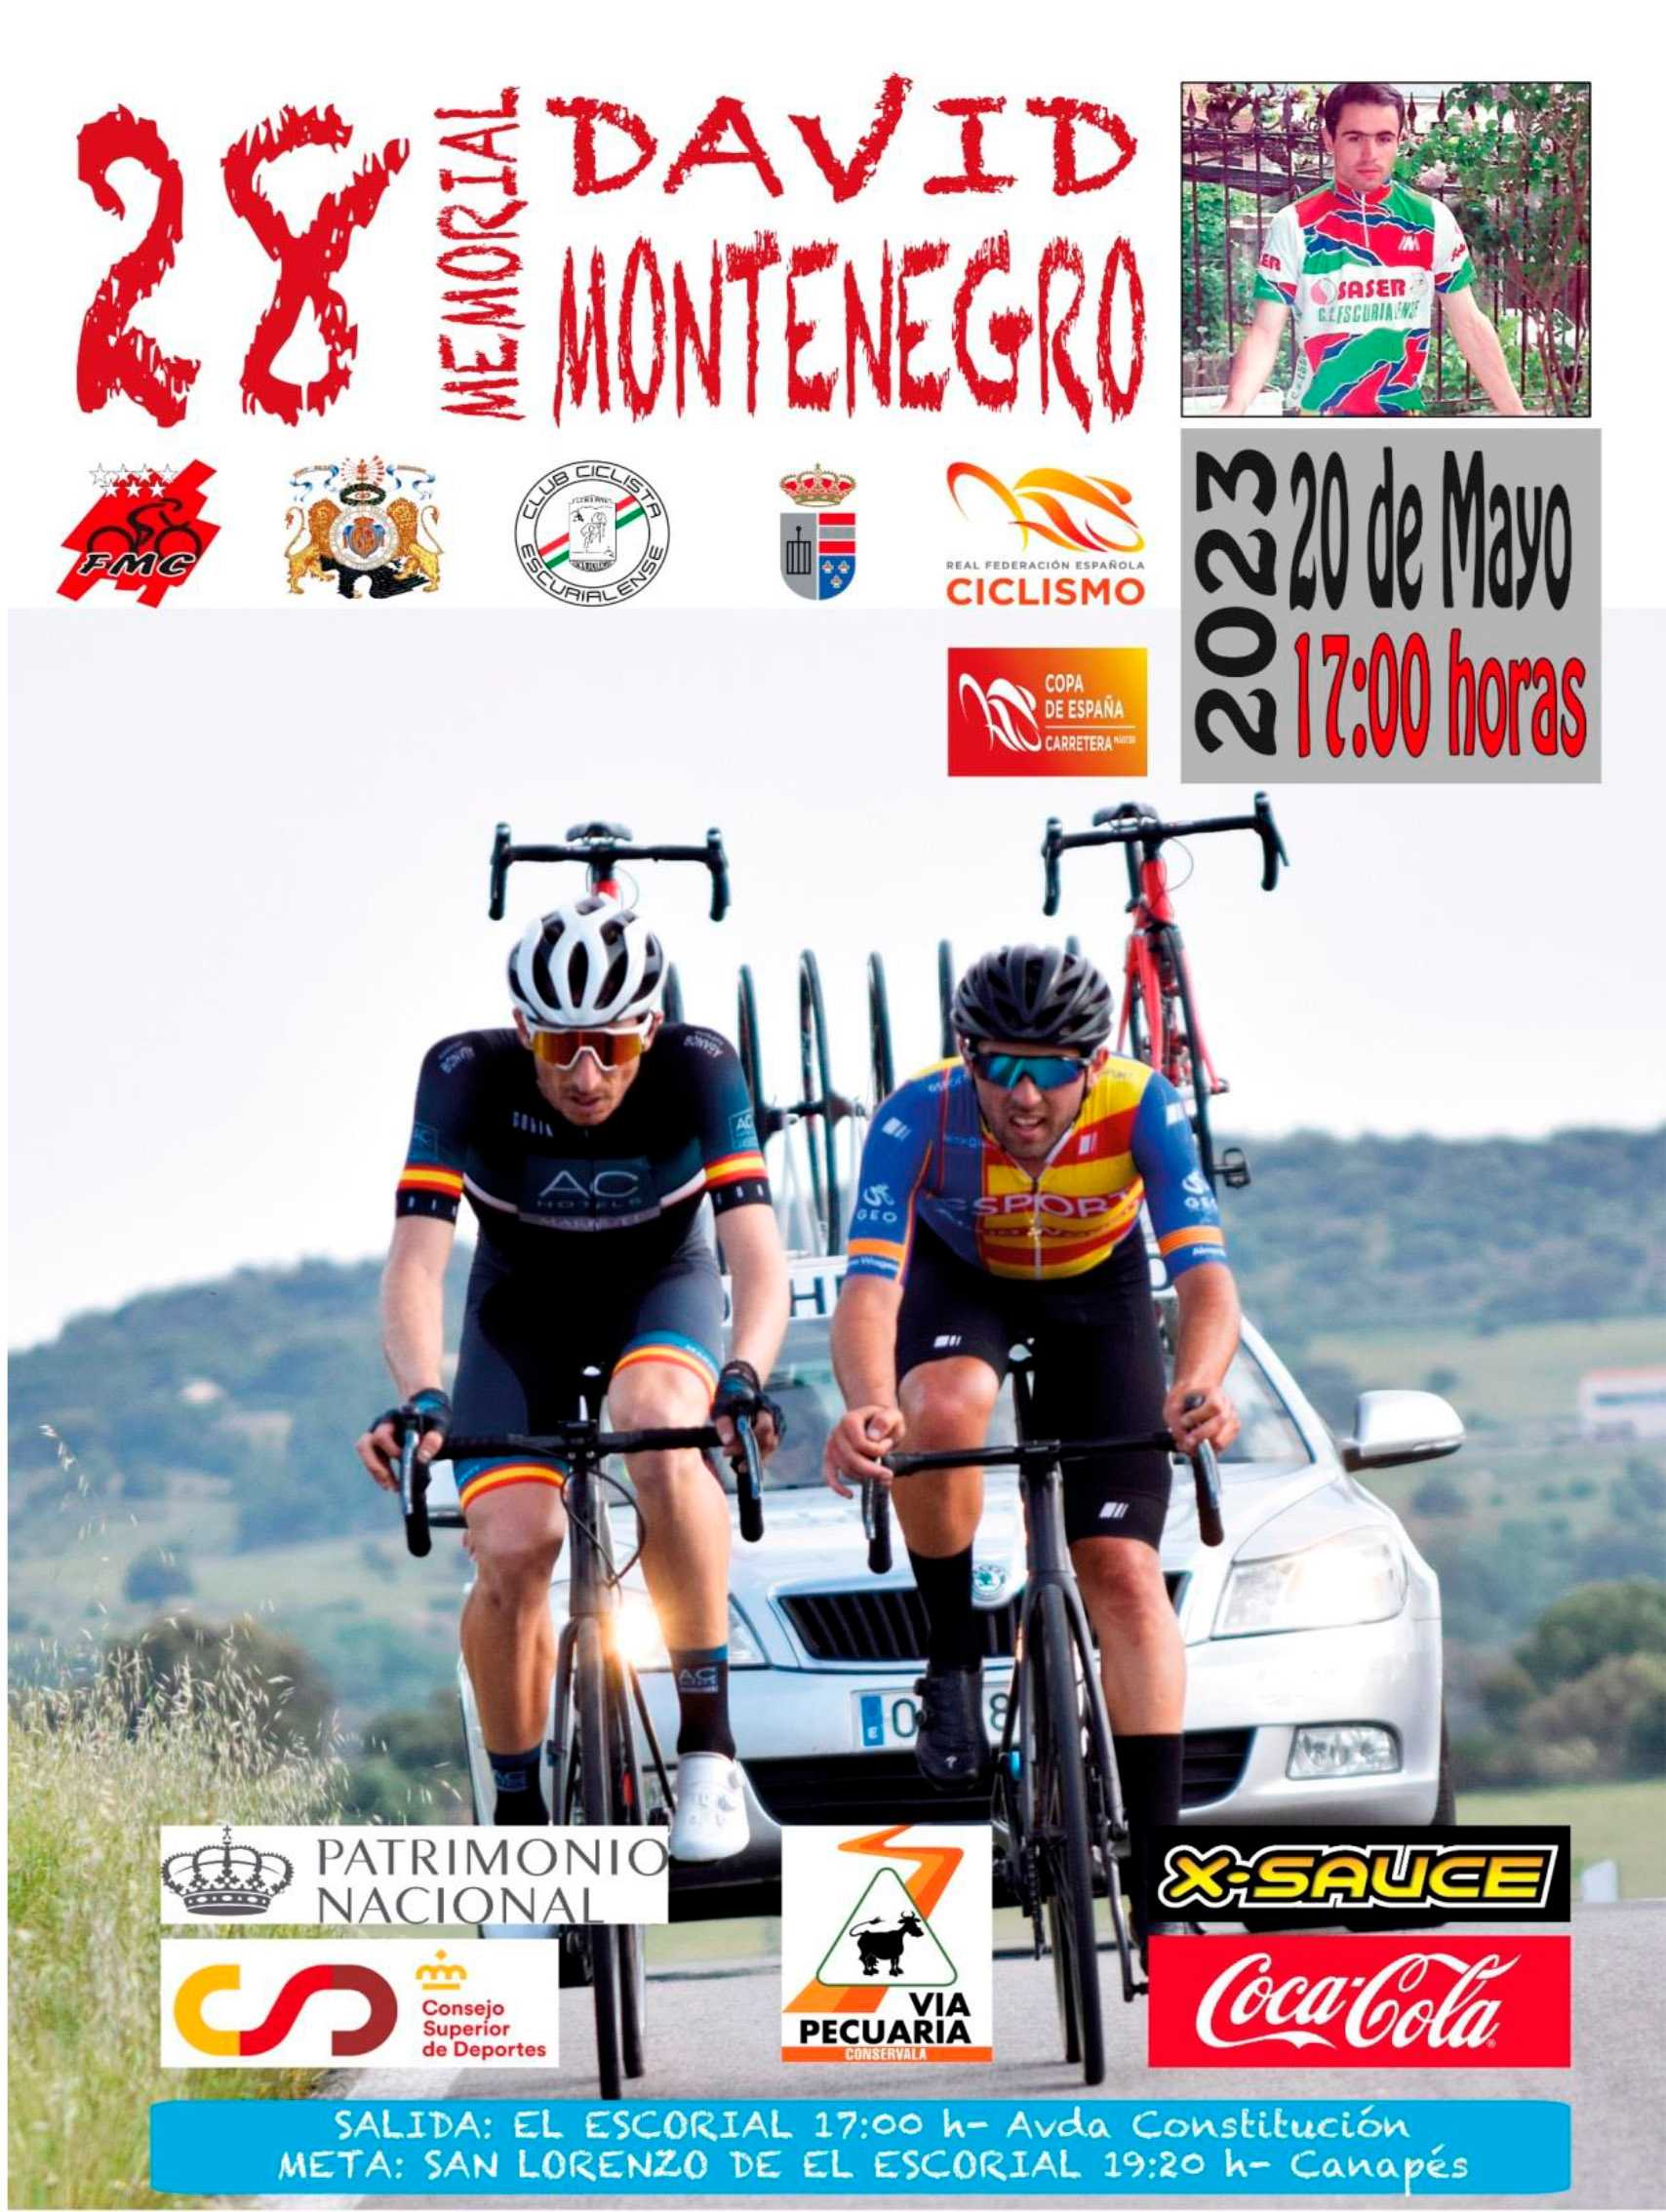 El próximo sábado vuelve el Memorial David Montenegro de ciclismo máster